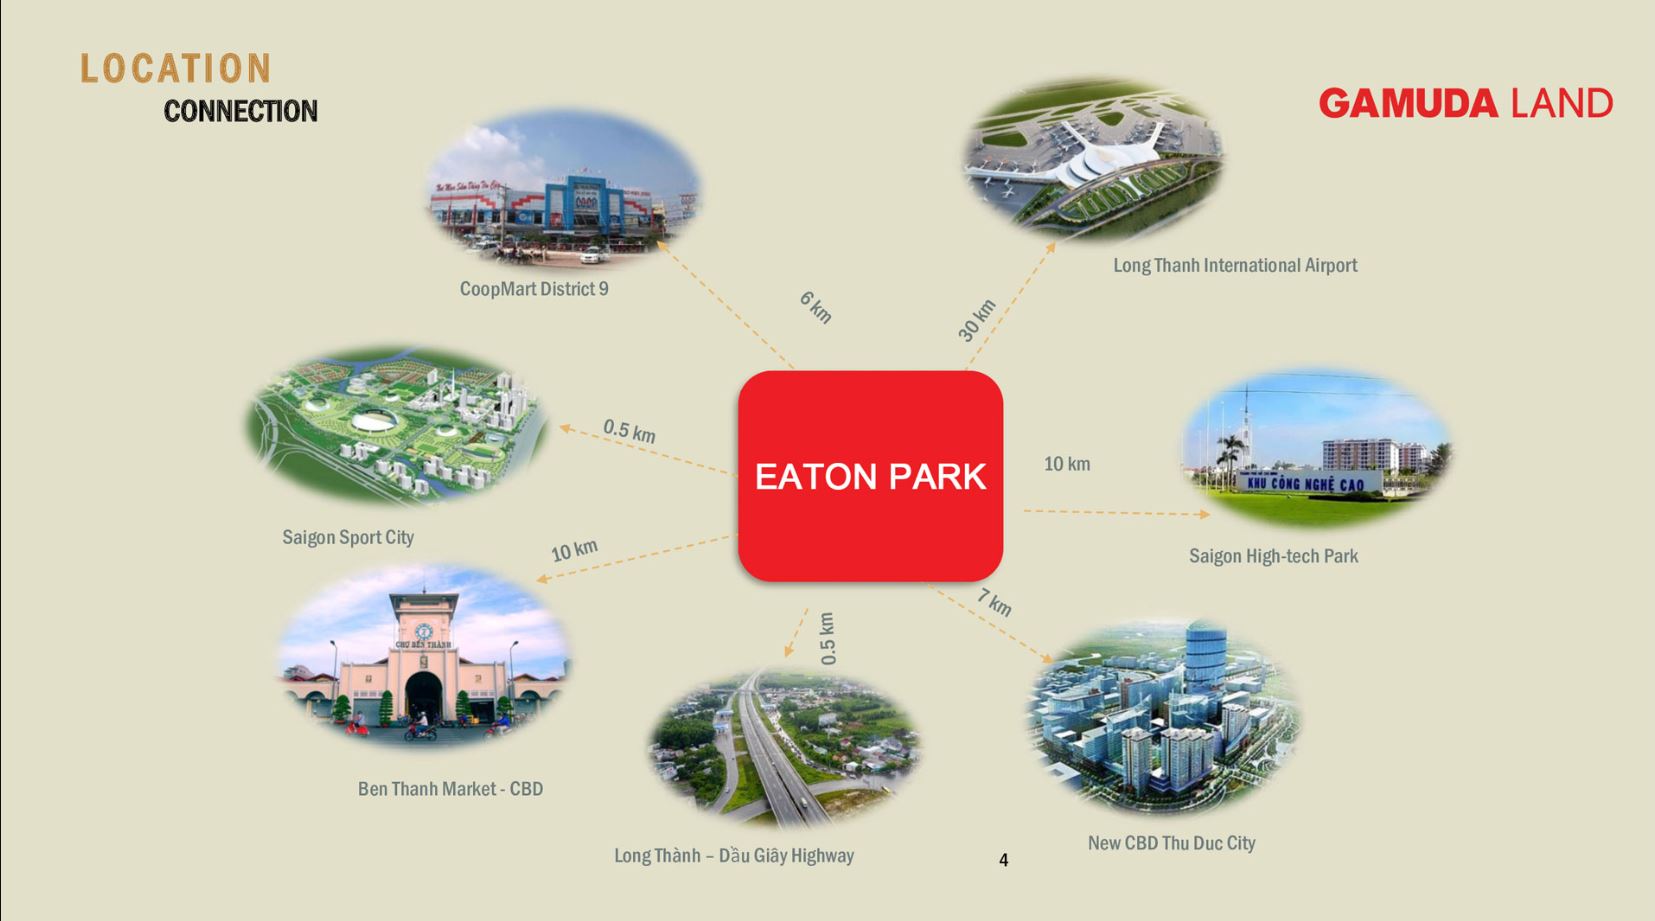 Eaton Park